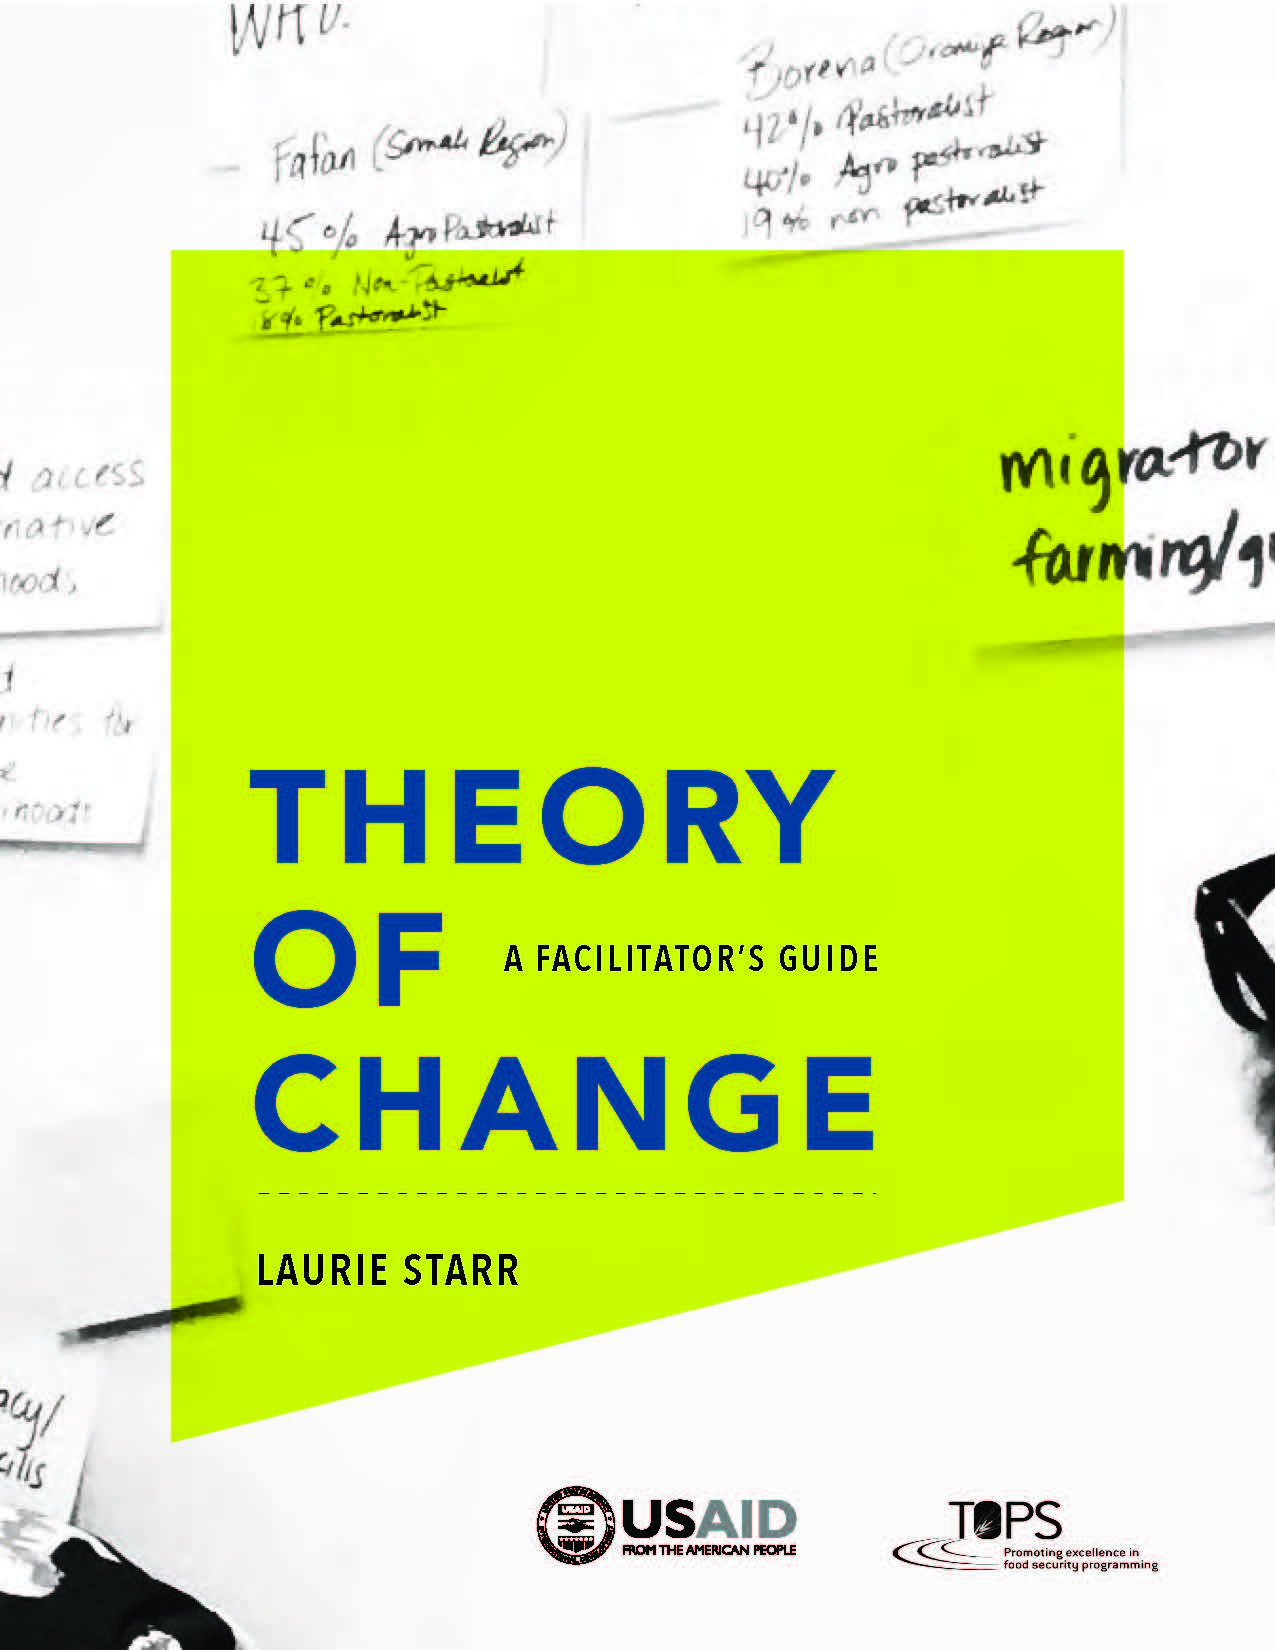 miniature de la théorie du changement